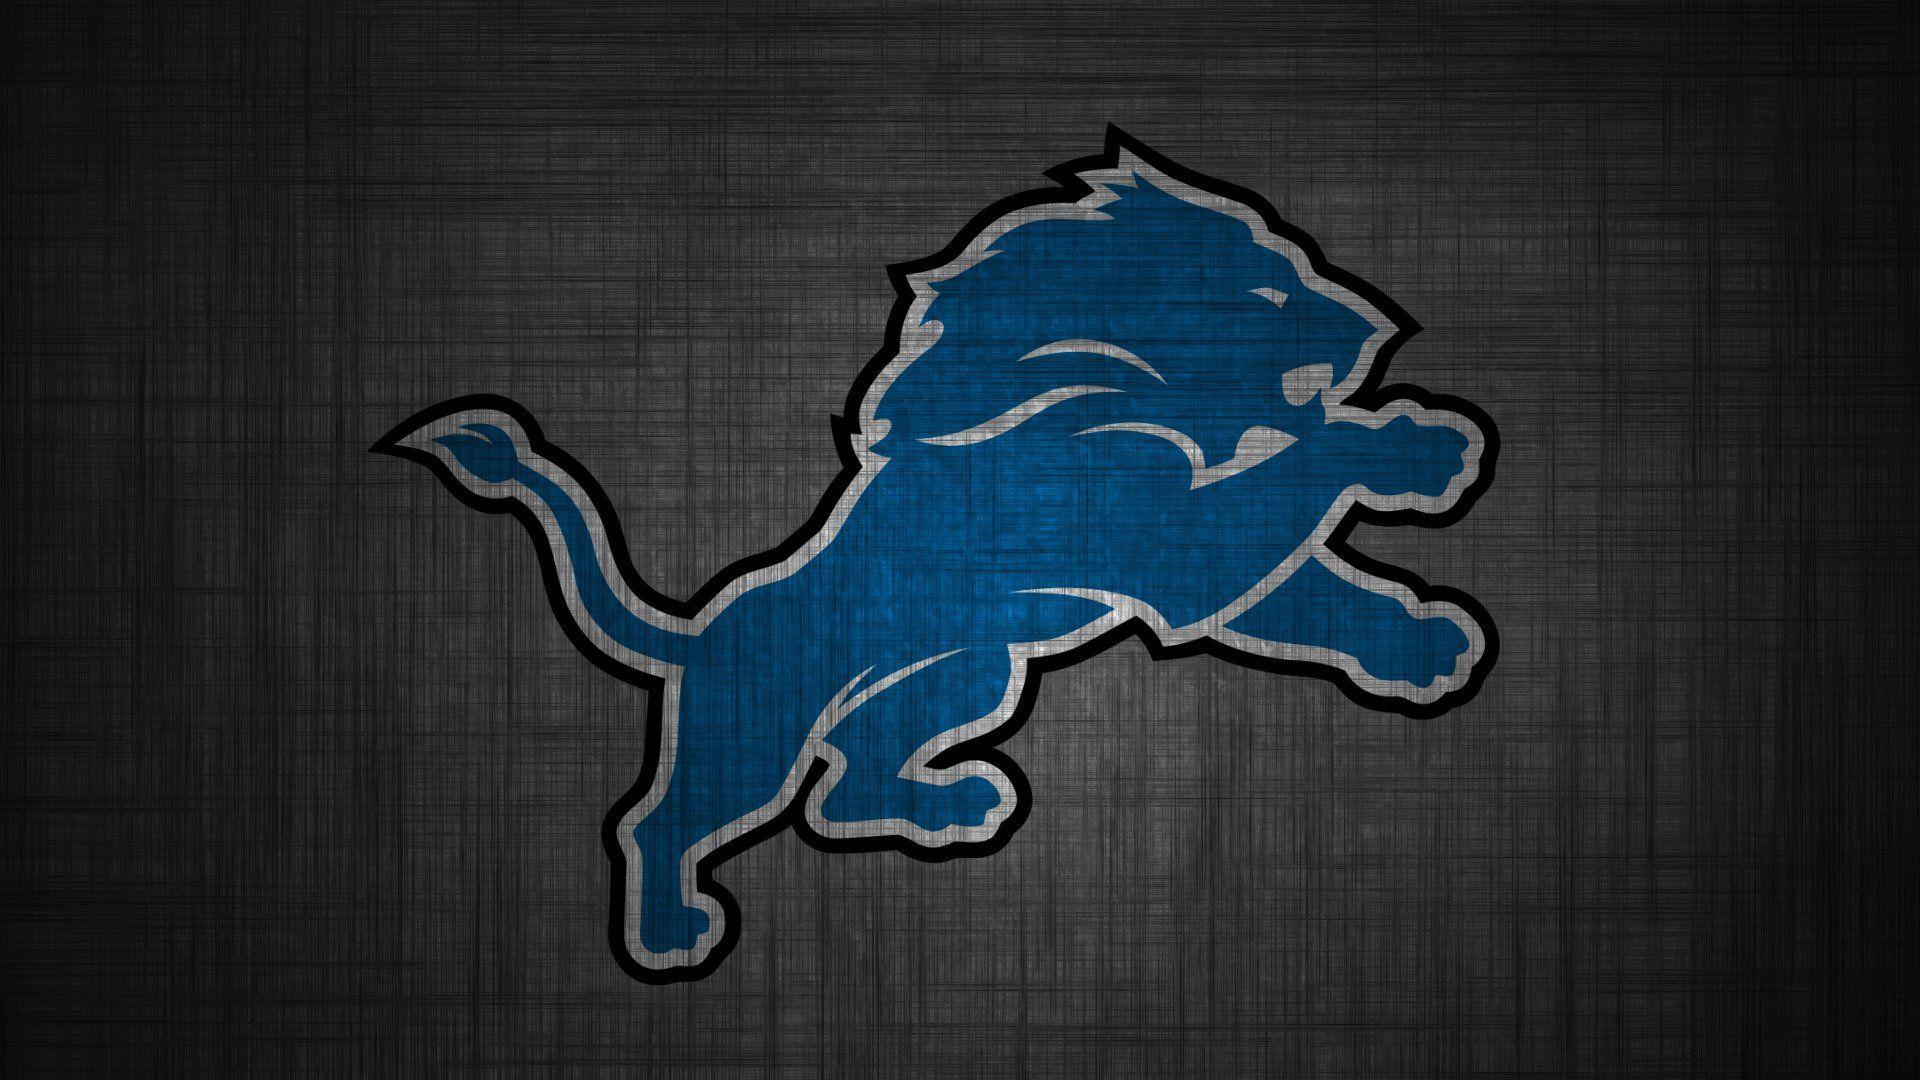 Detroit Lions Image Download Free